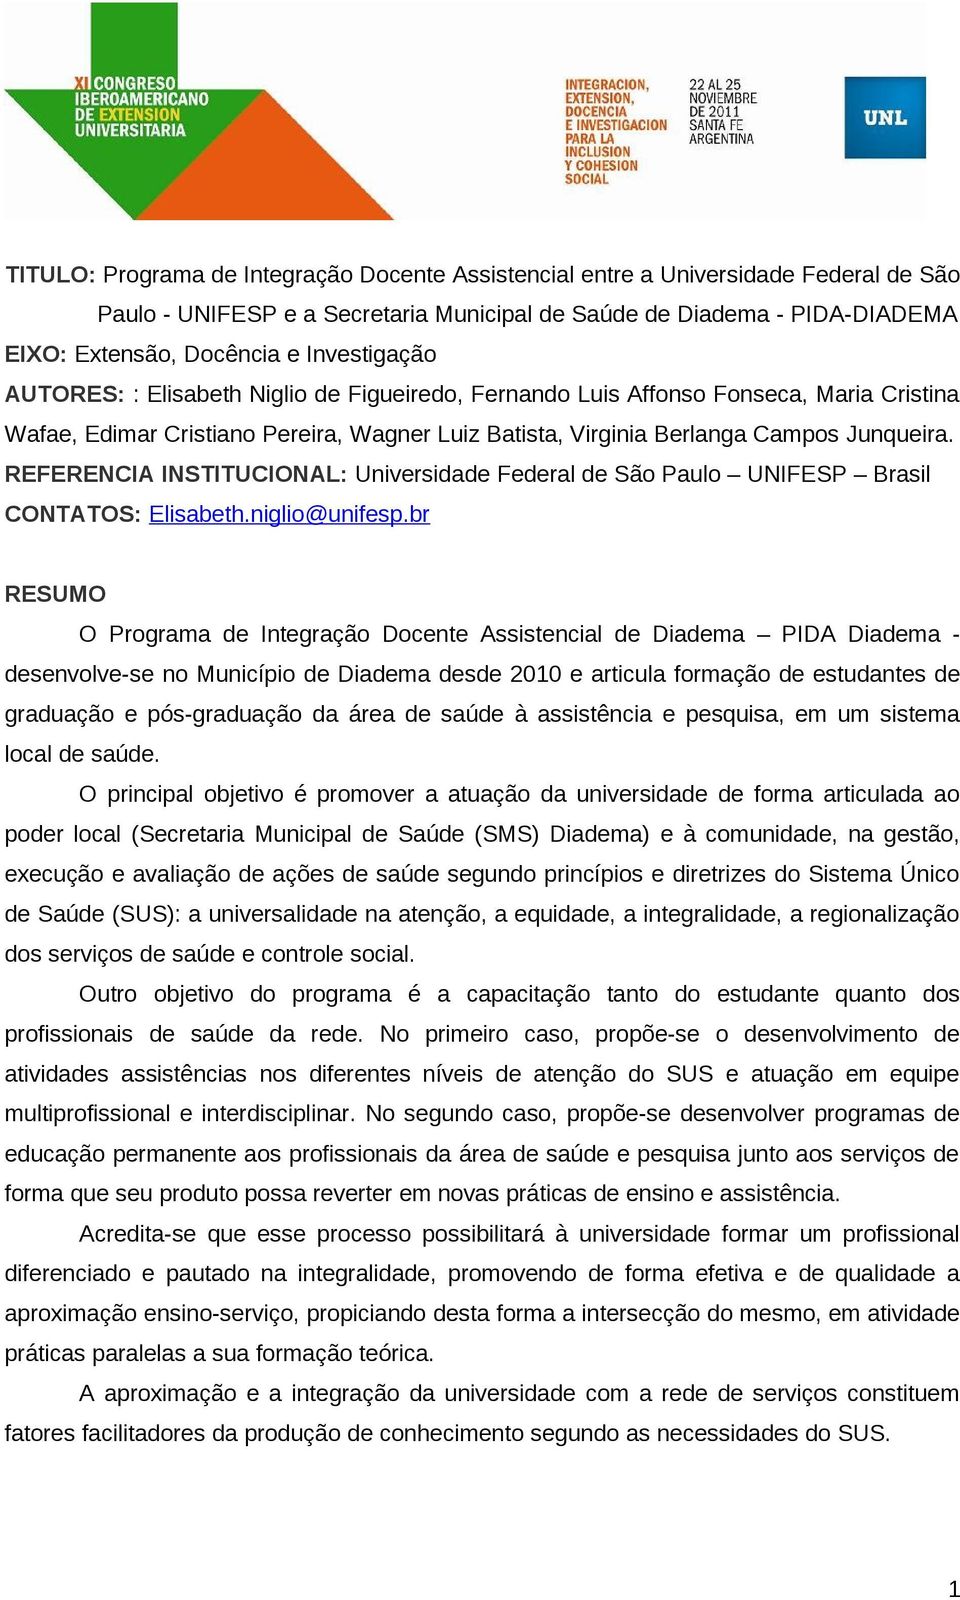 REFERENCIA INSTITUCIONAL: Universidade Federal de São Paulo UNIFESP Brasil CONTATOS: Elisabeth.niglio@unifesp.